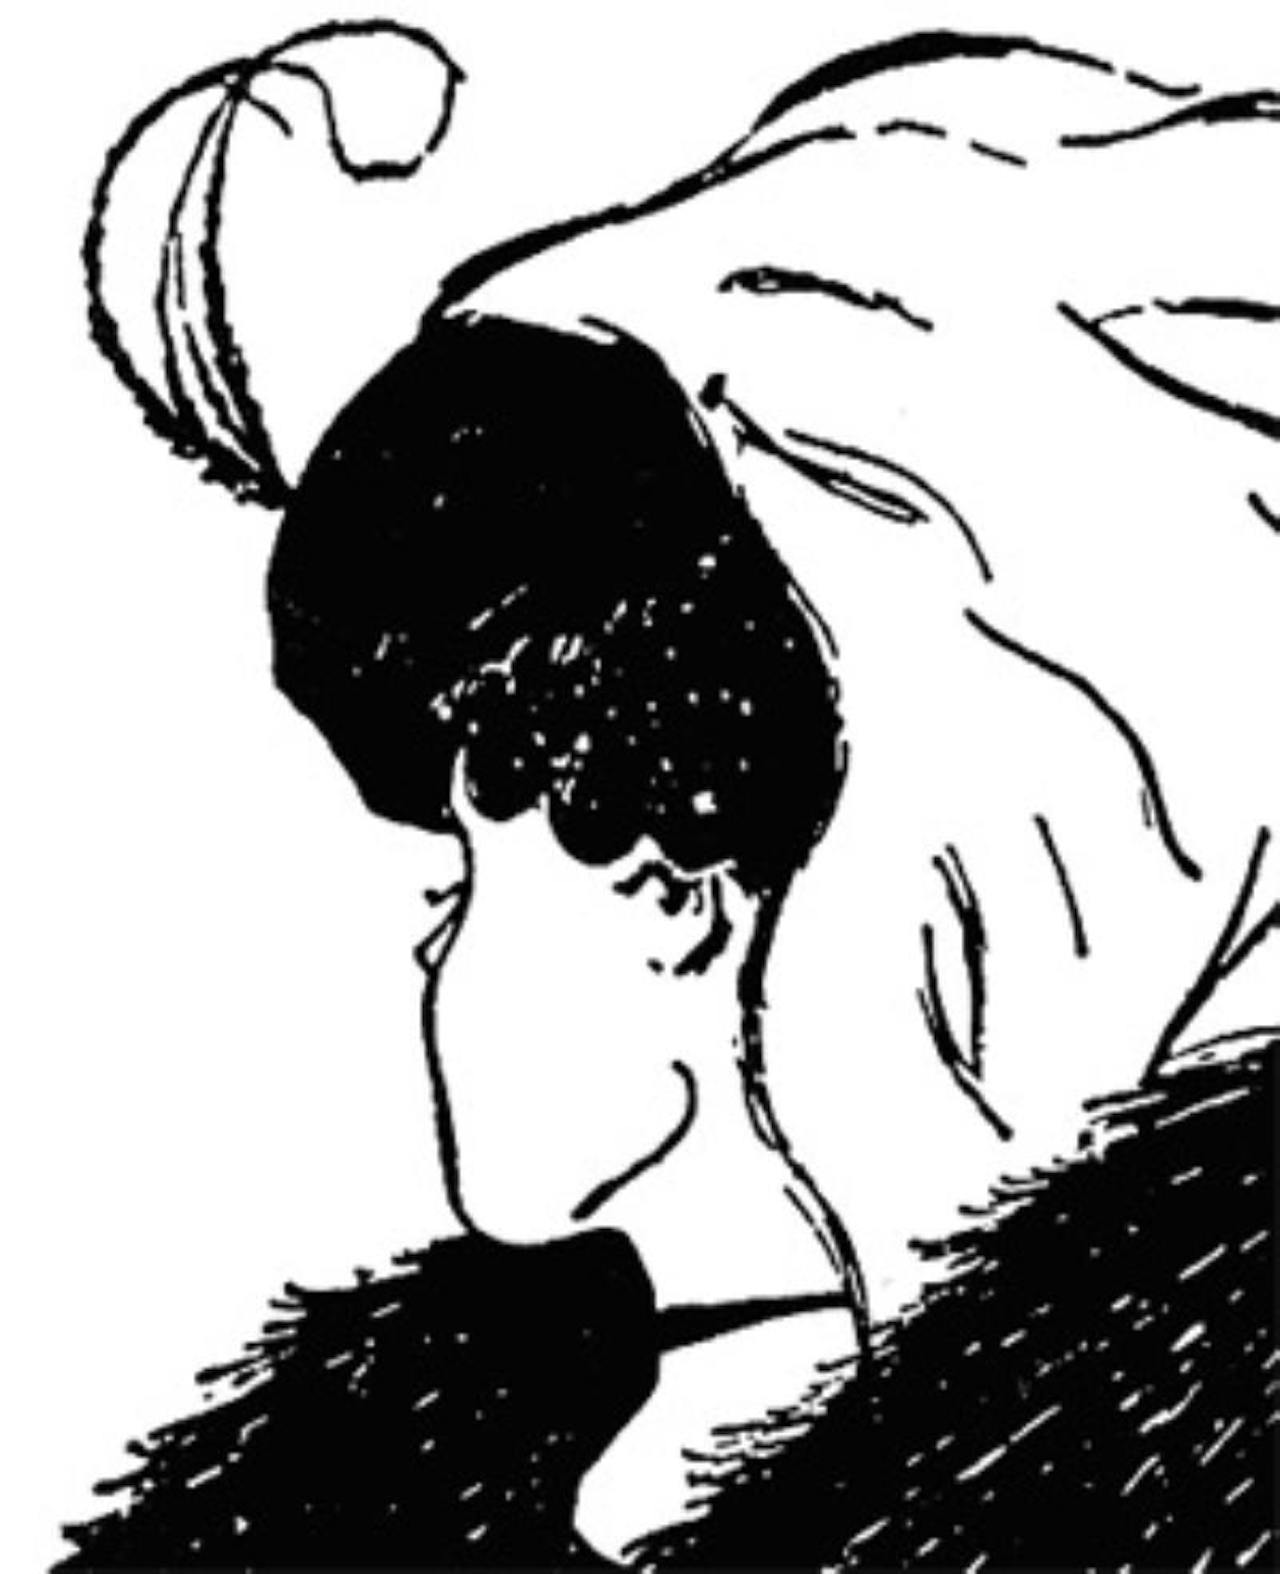 Een zwart-wit tekening van ene optische ilusie. Er kan een jonge vrouw met een hoed of een oude dame worden gezien in de tekening.